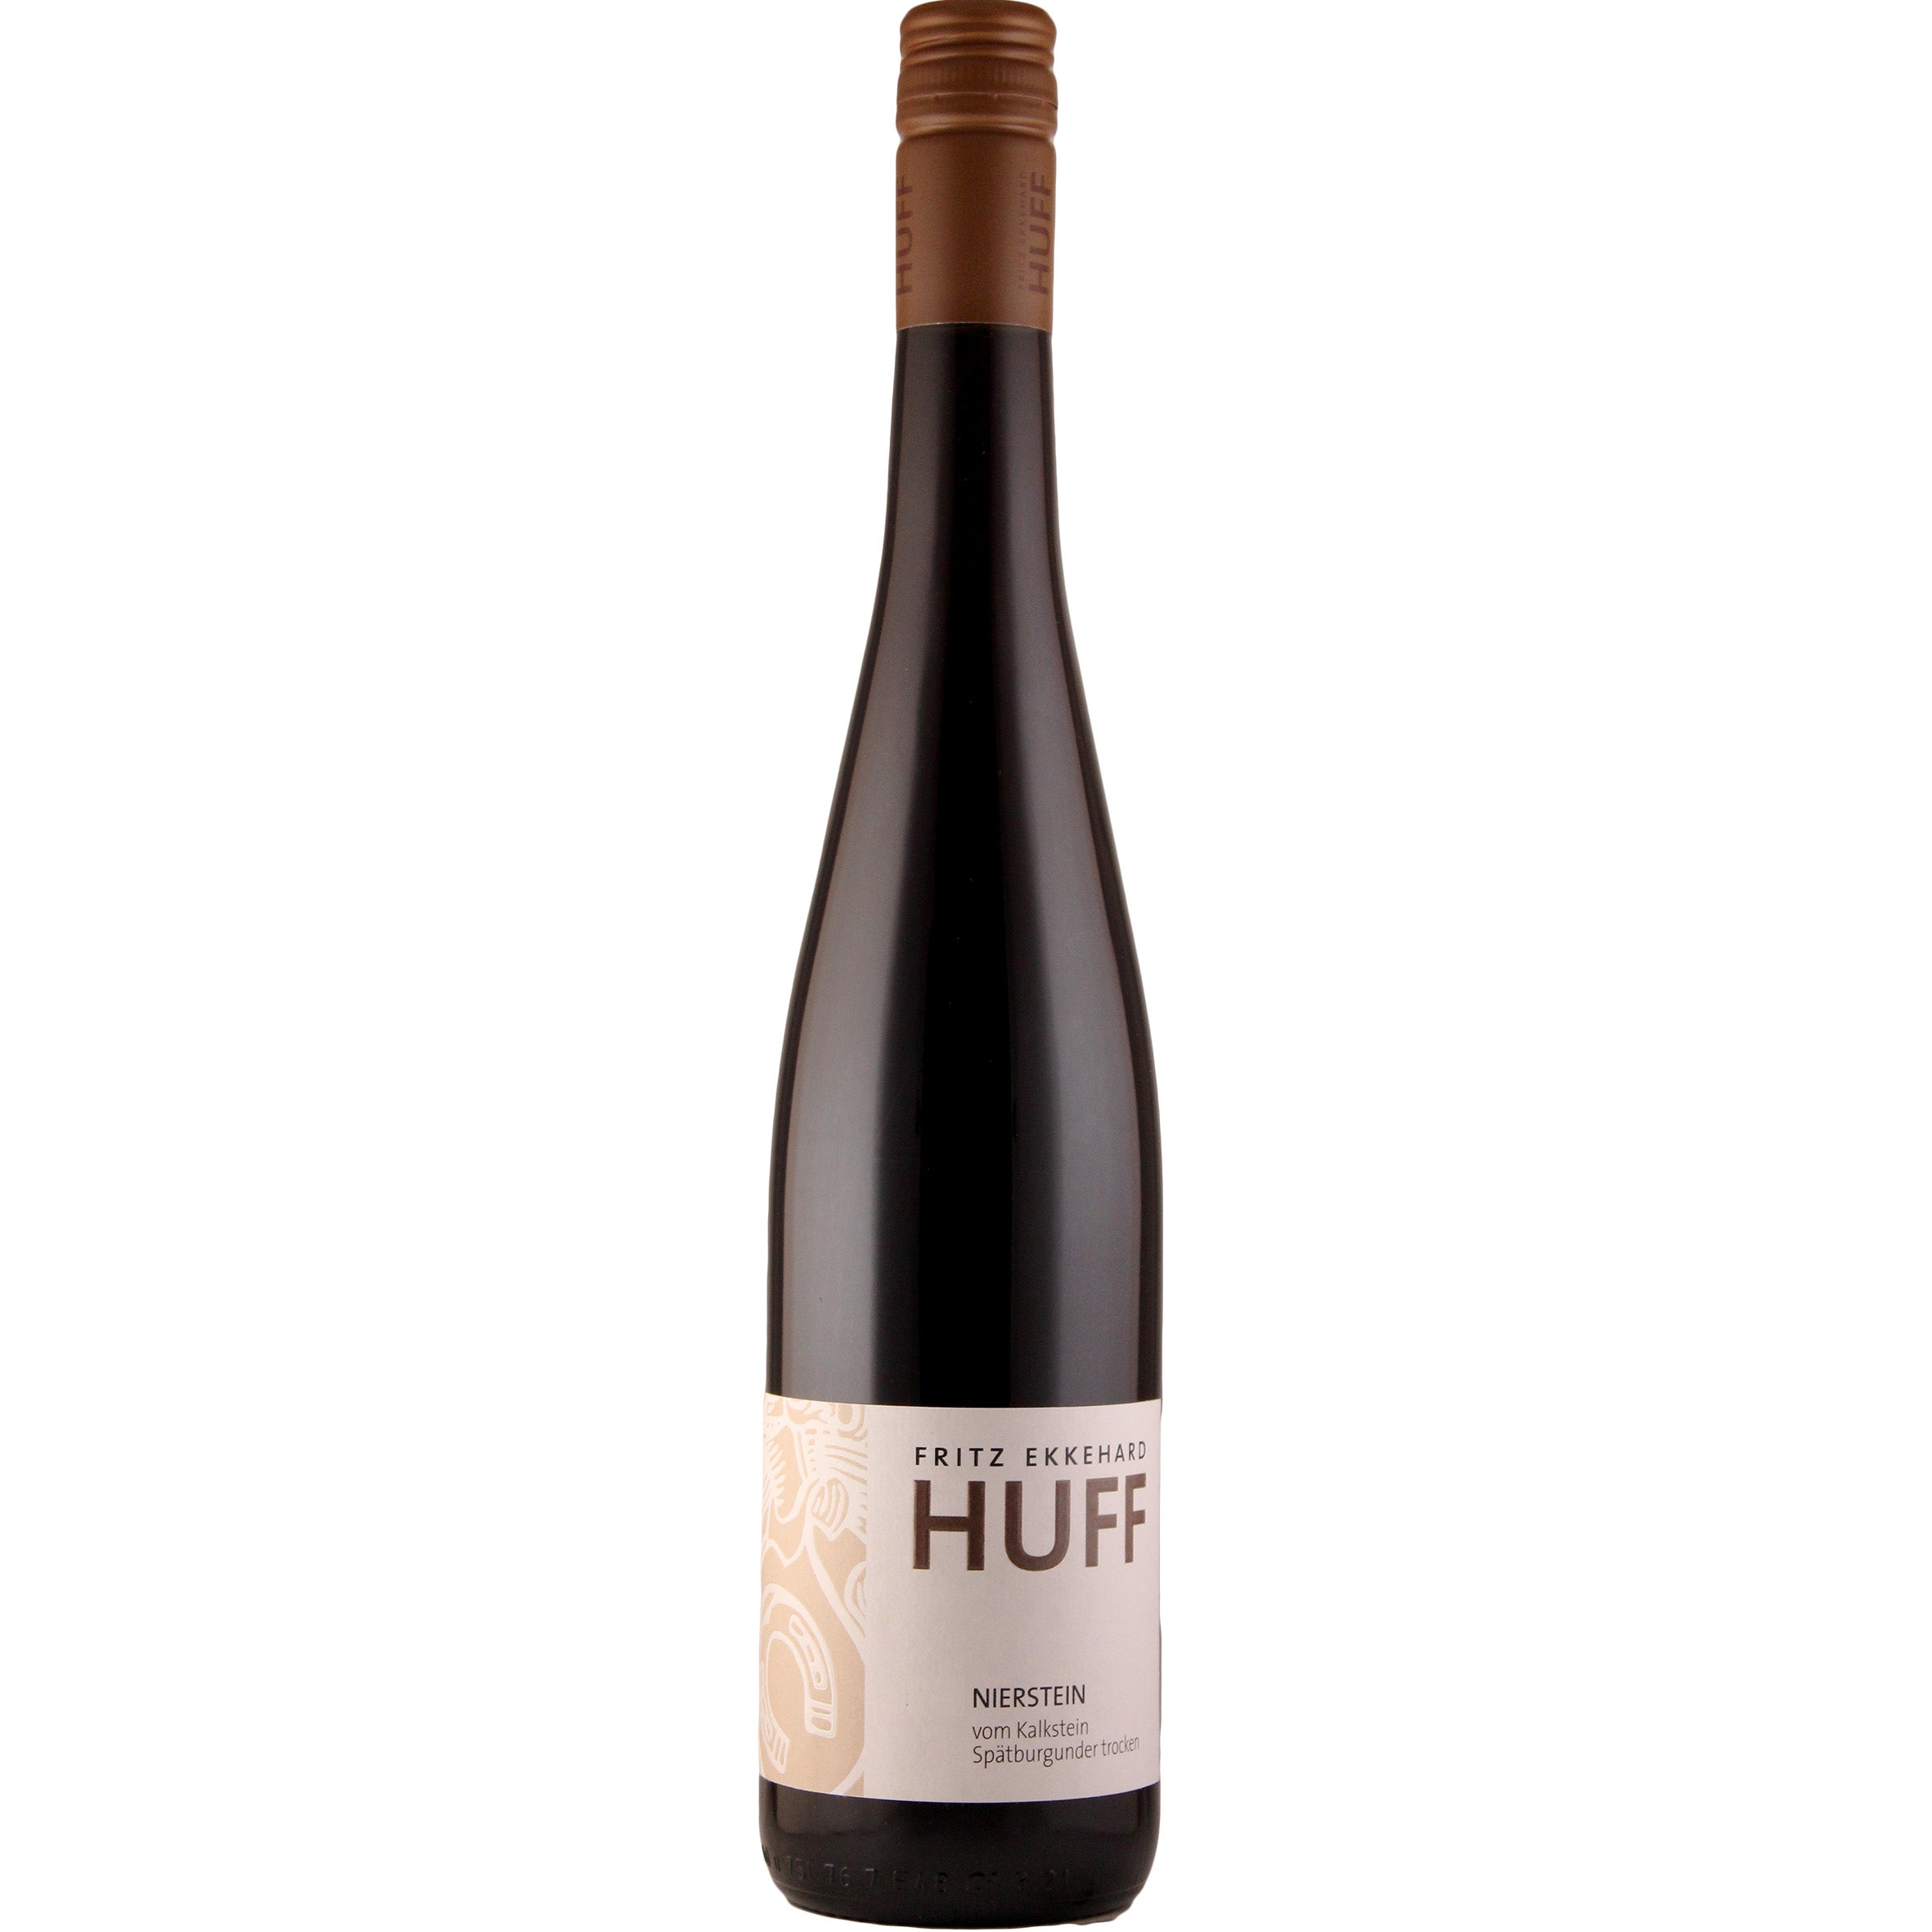 Nierstein Spätburgunder \'vom Kalkstein\' red – Weingut-Fritz-Ekkehard-Huff dry wine